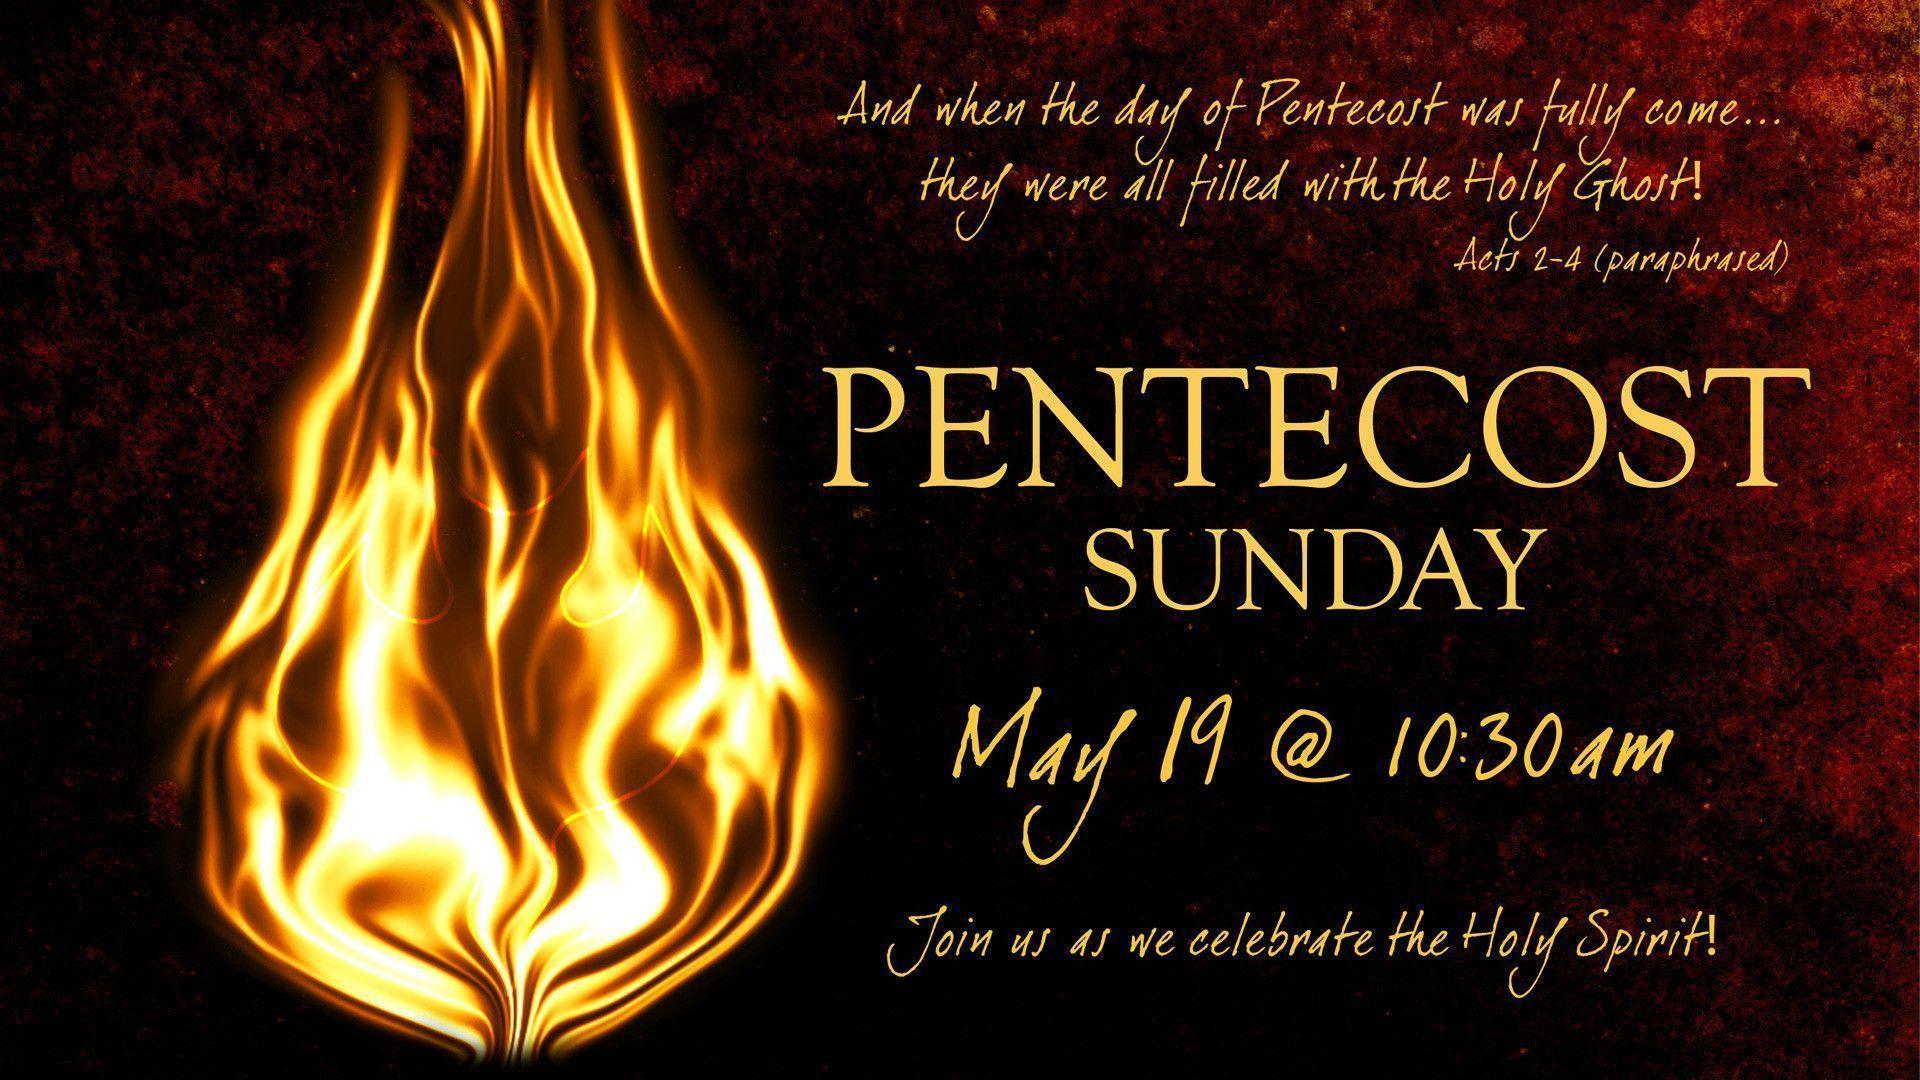 Pentecost Sunday - May 19th at 10:30am